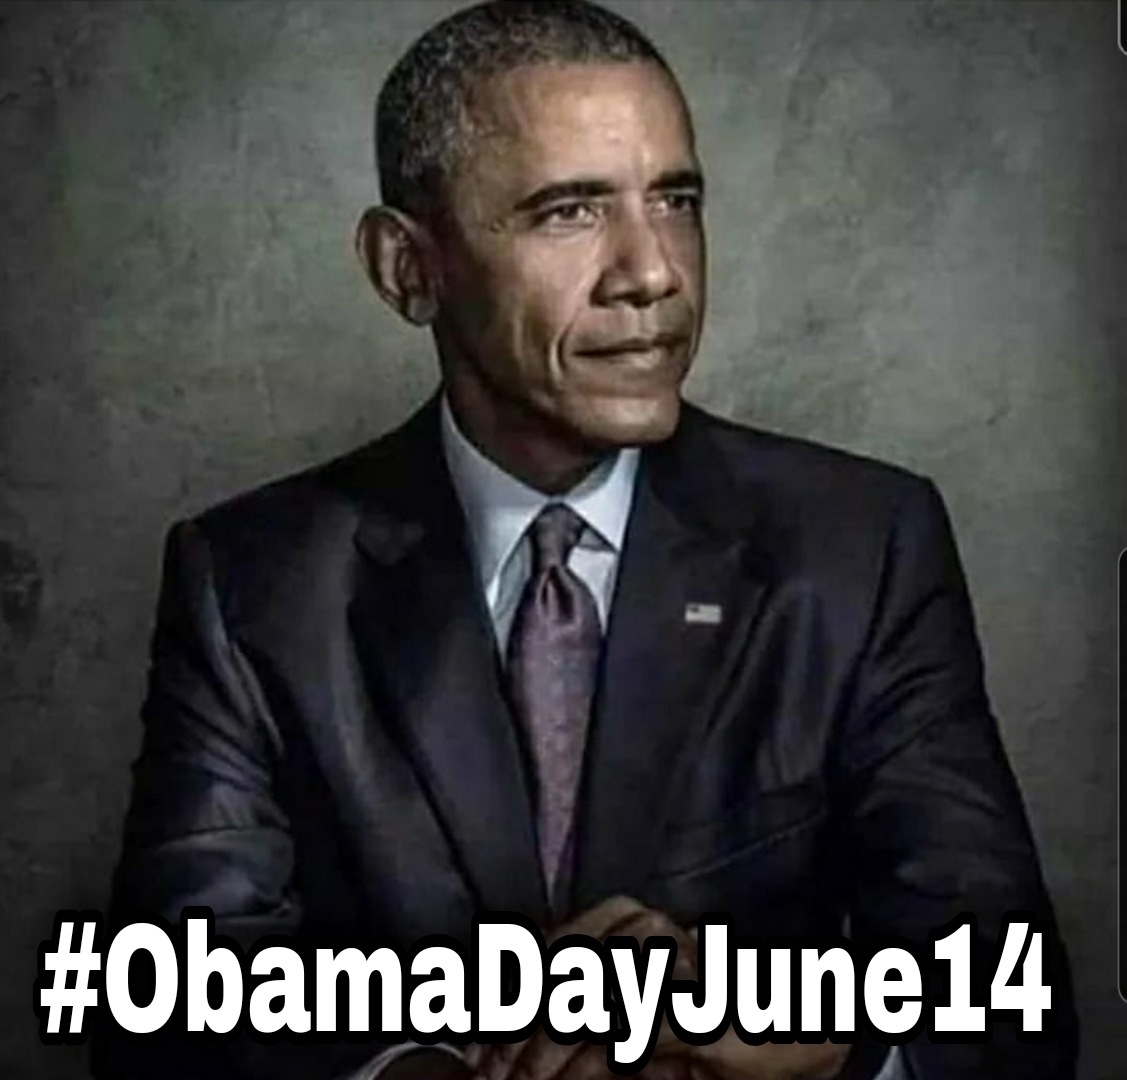 Happy #ObamaDay